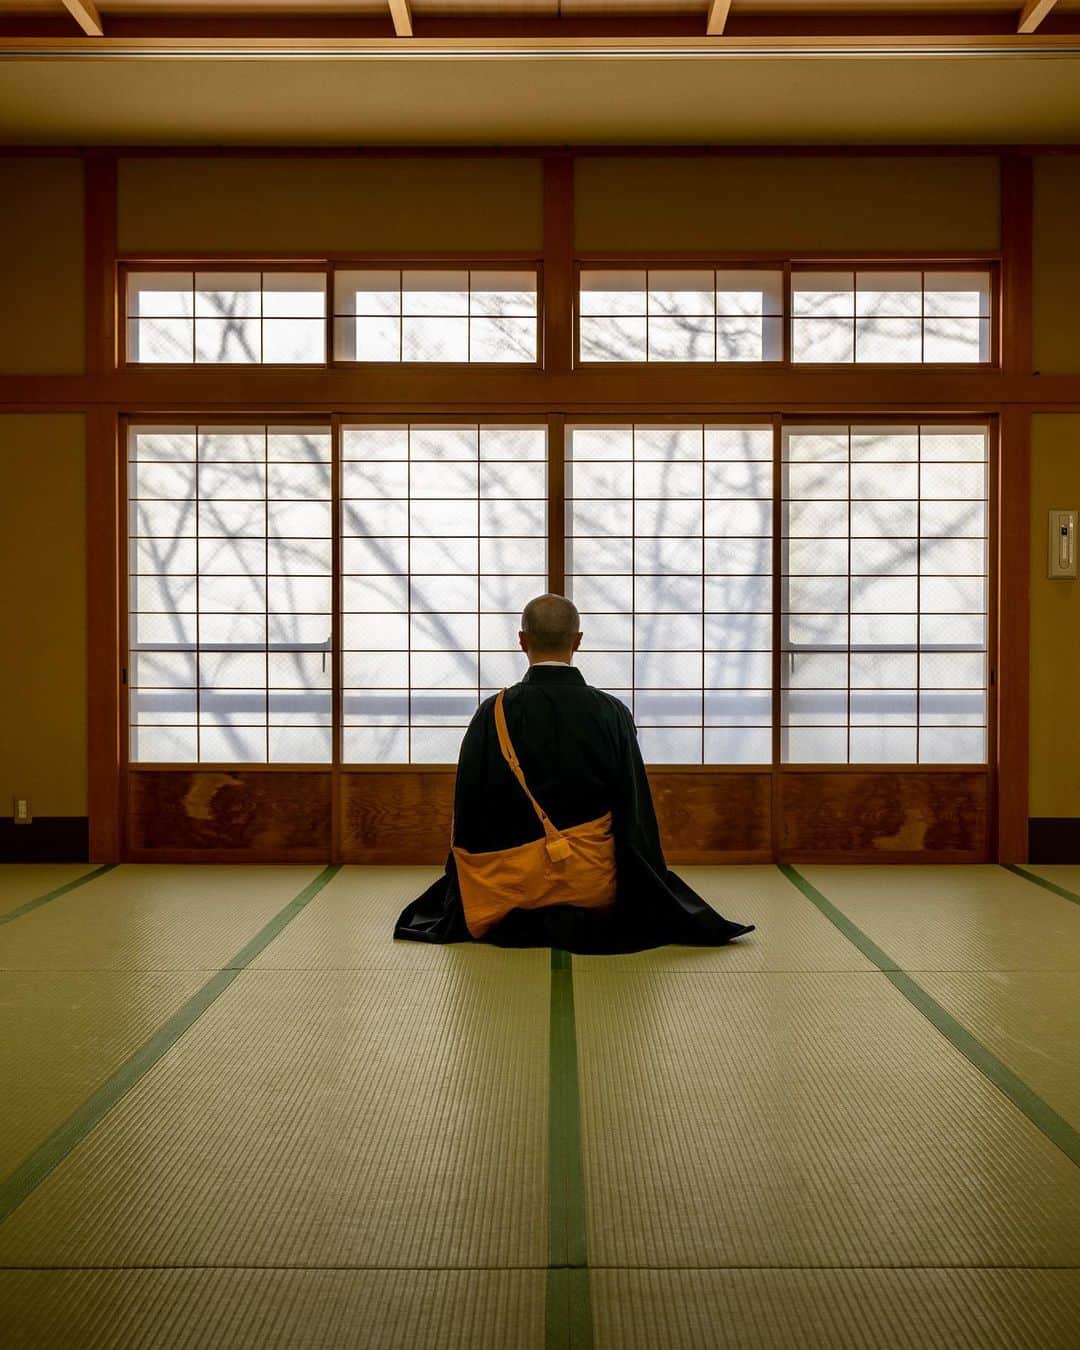 Koichiのインスタグラム：「.  Workation experience at a temple's Shukubo  Vol.2  信貴山 朝護孫子寺の塔頭の一つであり、今回滞在した宿坊でもある玉蔵院さんで、僧侶の修行体験をさせて頂きました。  1st / 阿息観。自律神経を整え、心を落ち着かせる効果がある呼吸法を取り入れた、密教の瞑想法。「阿〜」と発声しながら瞑想します。  2nd / 精進料理。仏教の戒に基づき、殺生をせずに調達できる食材を用いた料理。素材の味が生きていてとても美味しかったです。  3rd / 被写体になってもらった道下さん。実はこのプログラムの参加者で僧侶ではありません。今回の宿坊ワーケーションのために、頭を坊主にしてきたという強者？です！  4th / 修行体験では法衣をレンタルすることもでき、僧侶になりきって体験ができます。女性用の尼僧の衣装もあります。  5th / 般若心経の読経と写経。日頃、文字を書く機会が少なくなっているので、毛筆がとても新鮮でした。  6th / 百八礼。このスクワットのような礼拝を108回連続して行います。これはかなりキツイ。。。  7th / 護摩祈祷。毎日5時半から行われている護摩を焚くご祈祷。見ていると徐々に炎とお経と太鼓の音がシンクロしていきます。とても神秘的な儀式でした。  #信貴山玉蔵院 #信貴山ワーケーション #奈良 #信貴山 #SAGOJO ,」